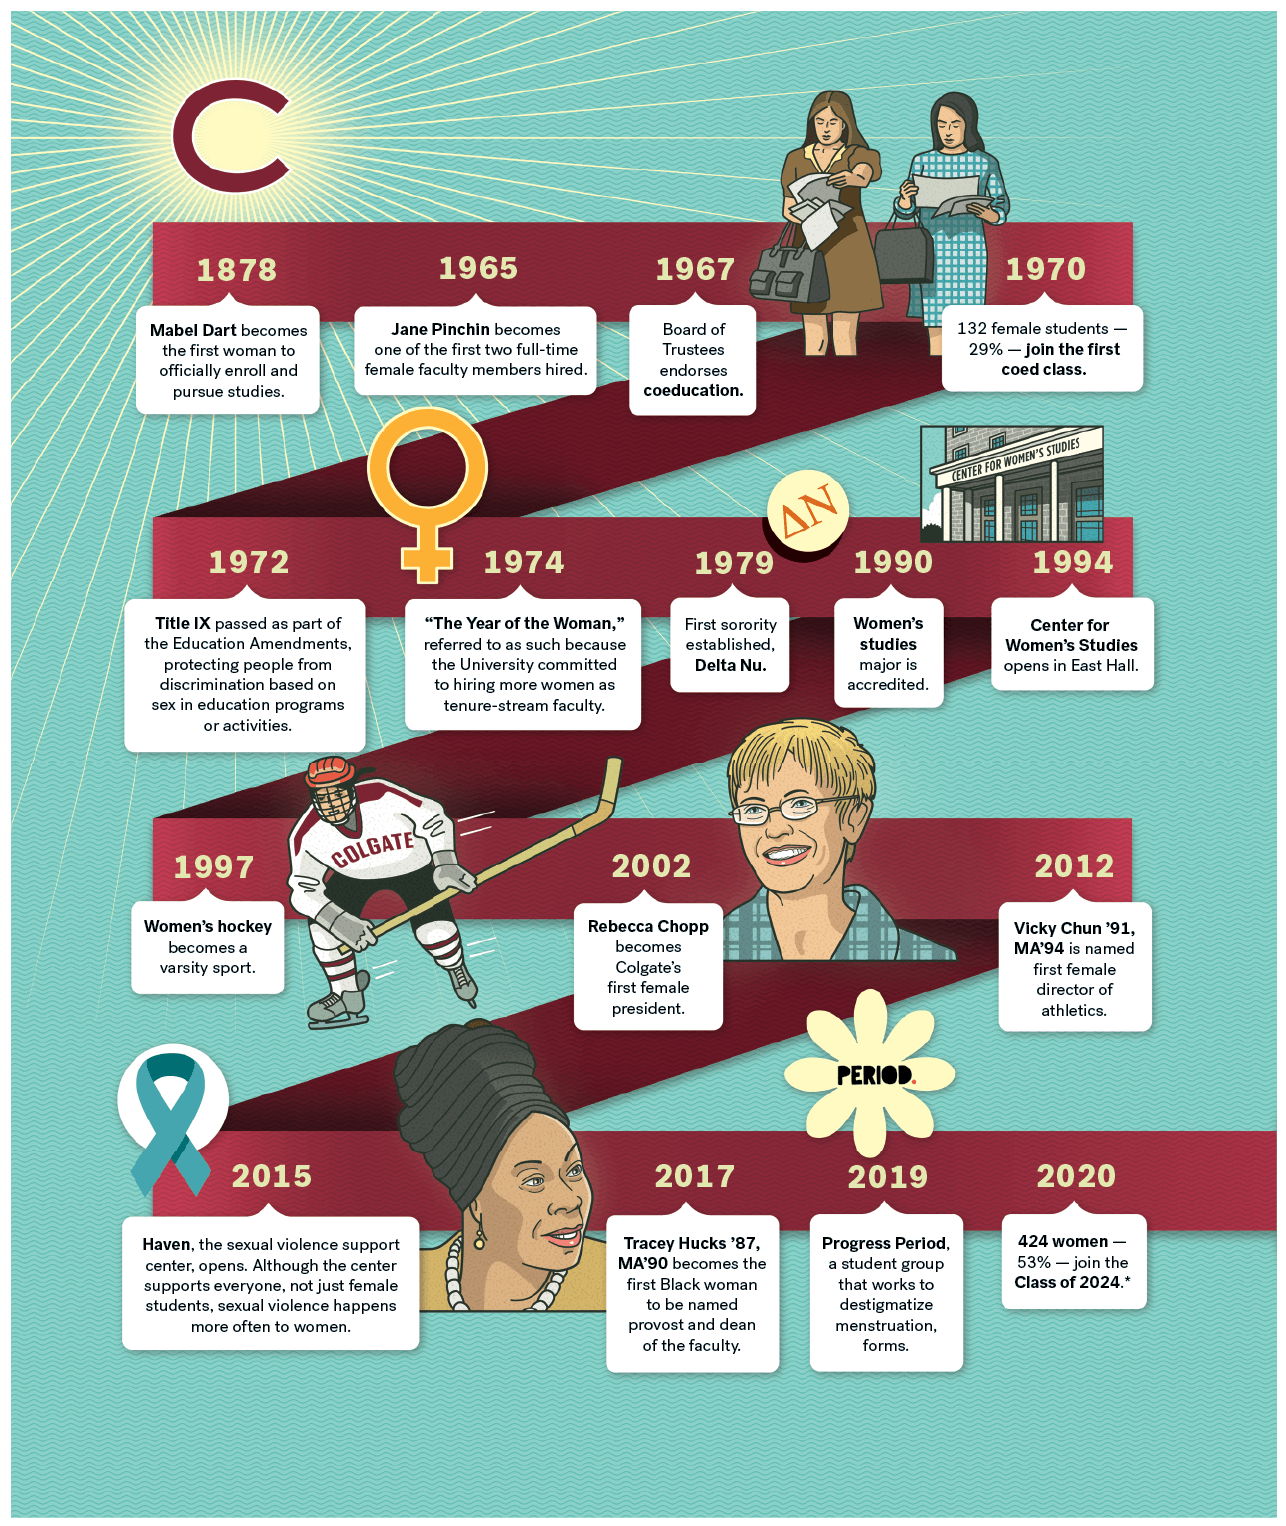 Colgate Timeline from 1878 until 2020